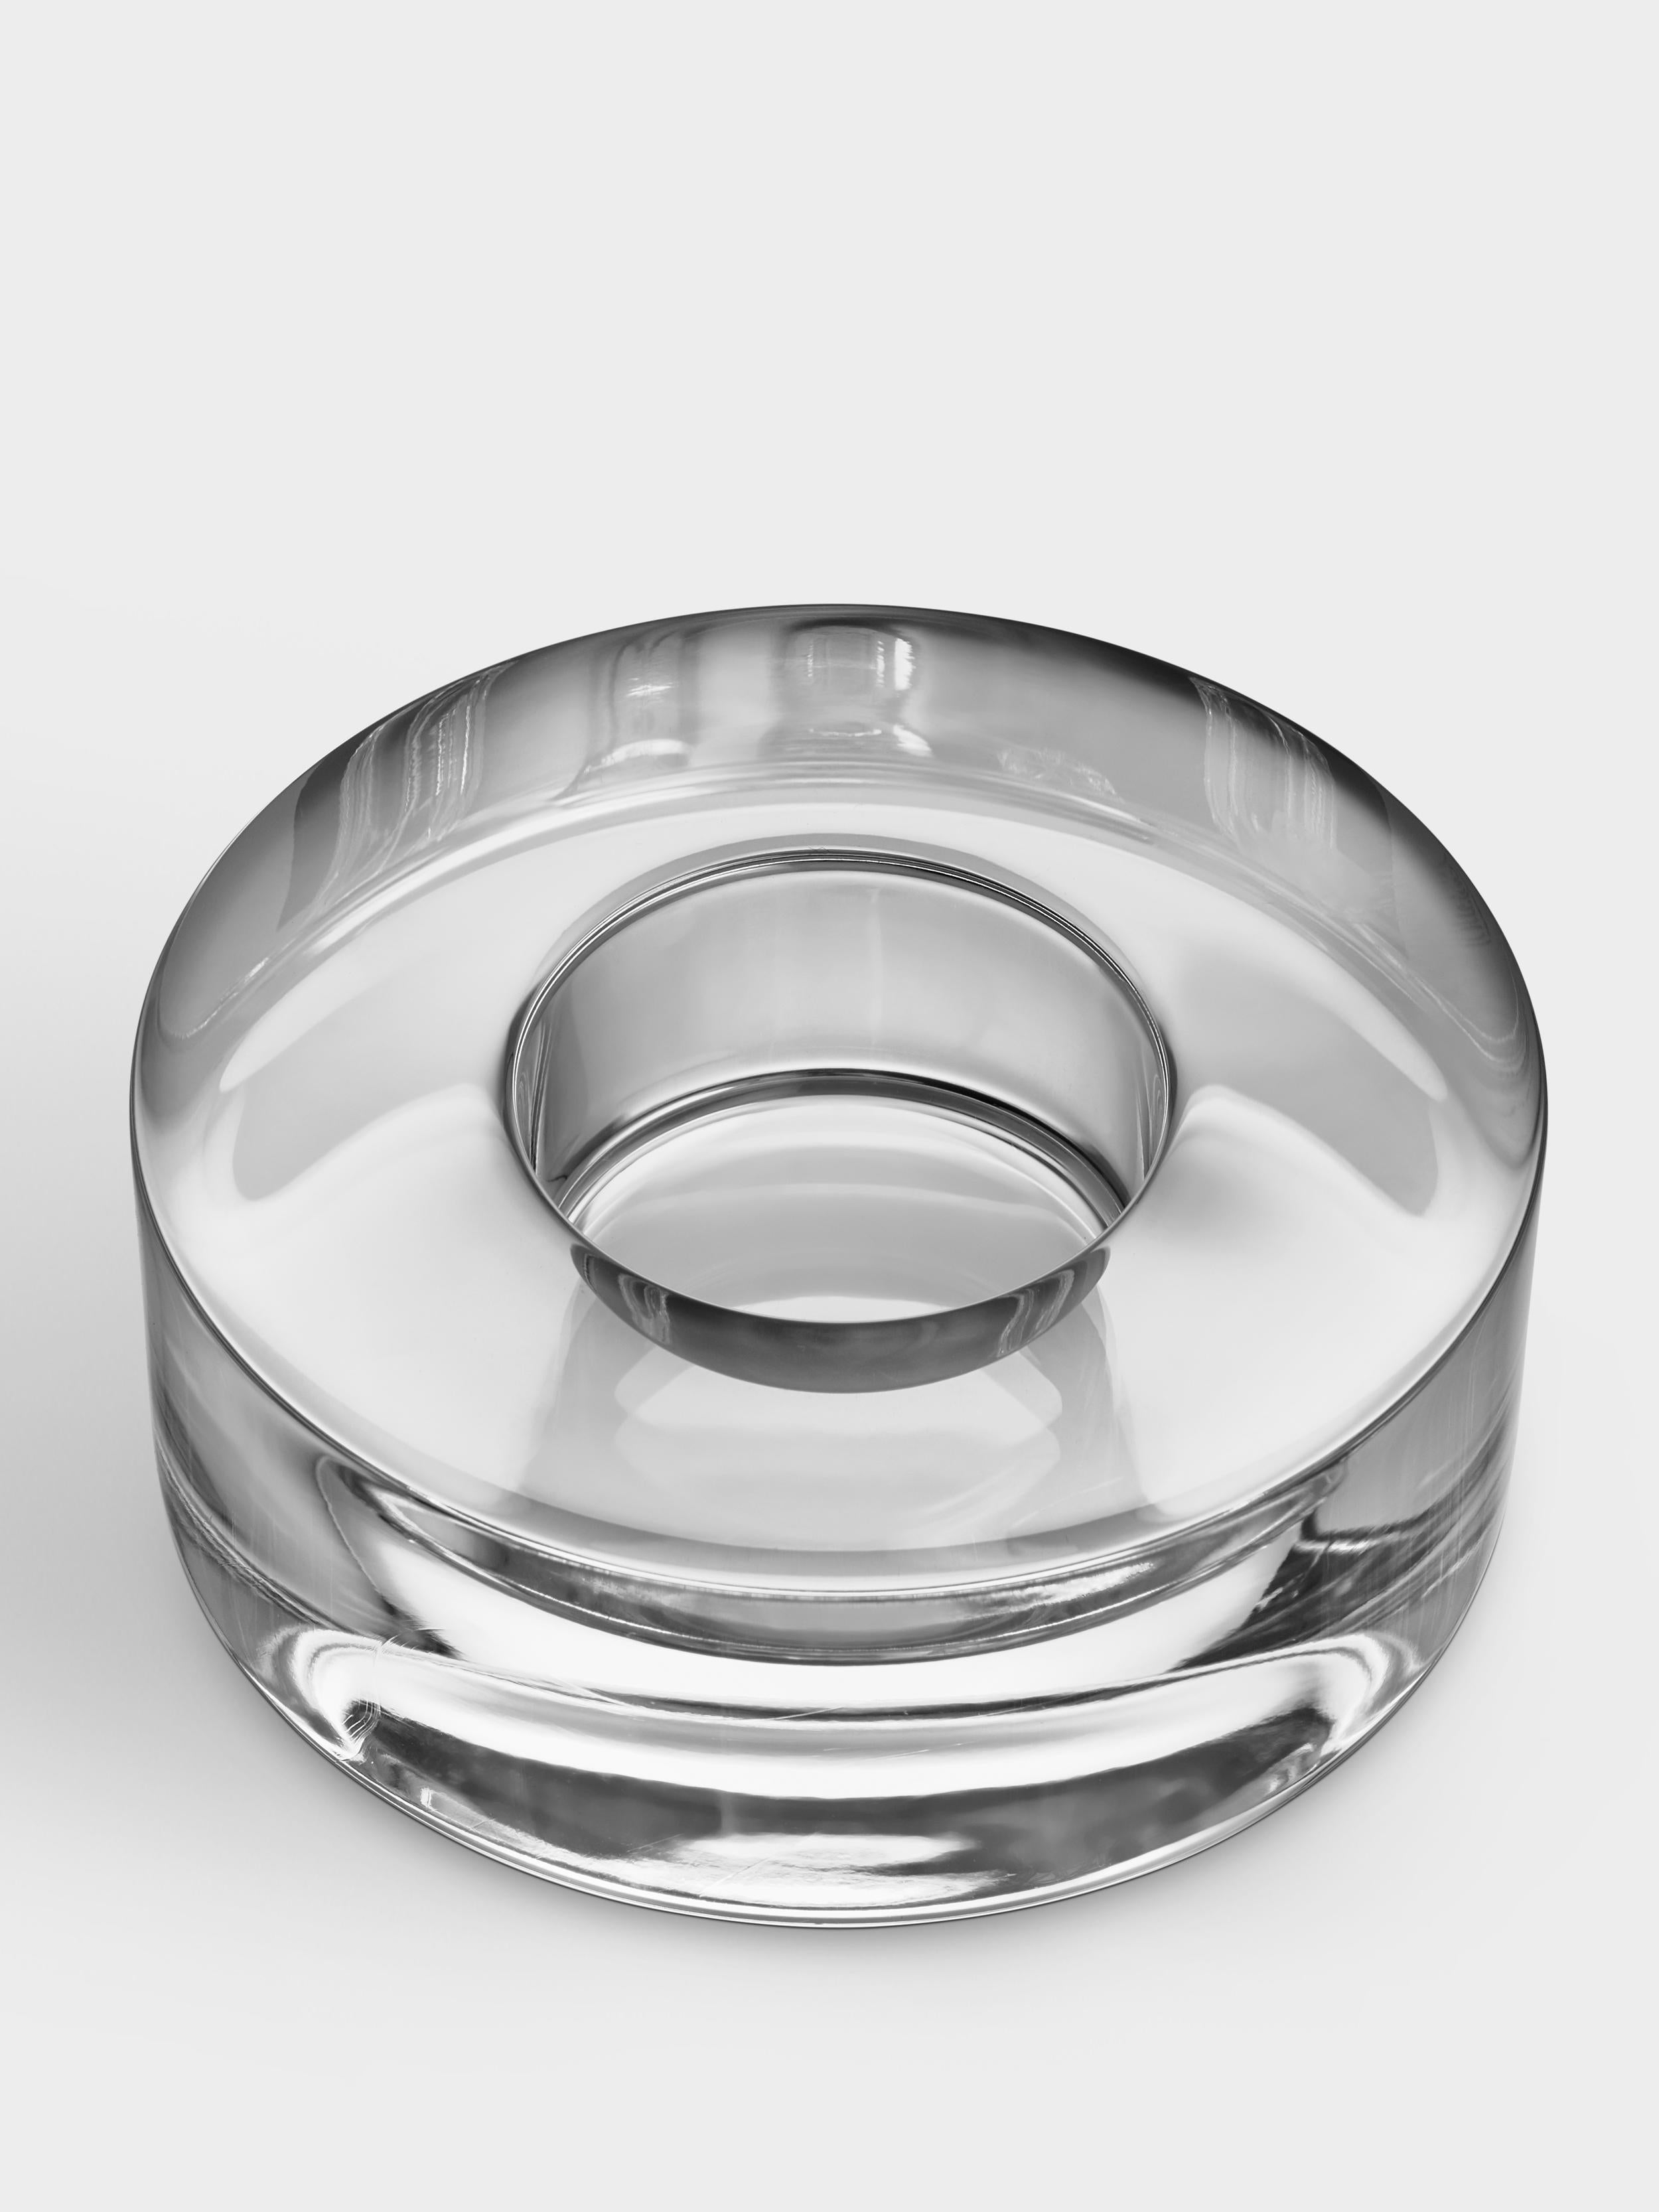 Le petit Puck Votive est un bougeoir, adapté aux bougies chauffe-plat, au design minimaliste qui fait le lien entre les similitudes entre le cristal pur et la glace. Lorsque le produit d'Orrefors a été lancé pour la première fois en 1999, il a